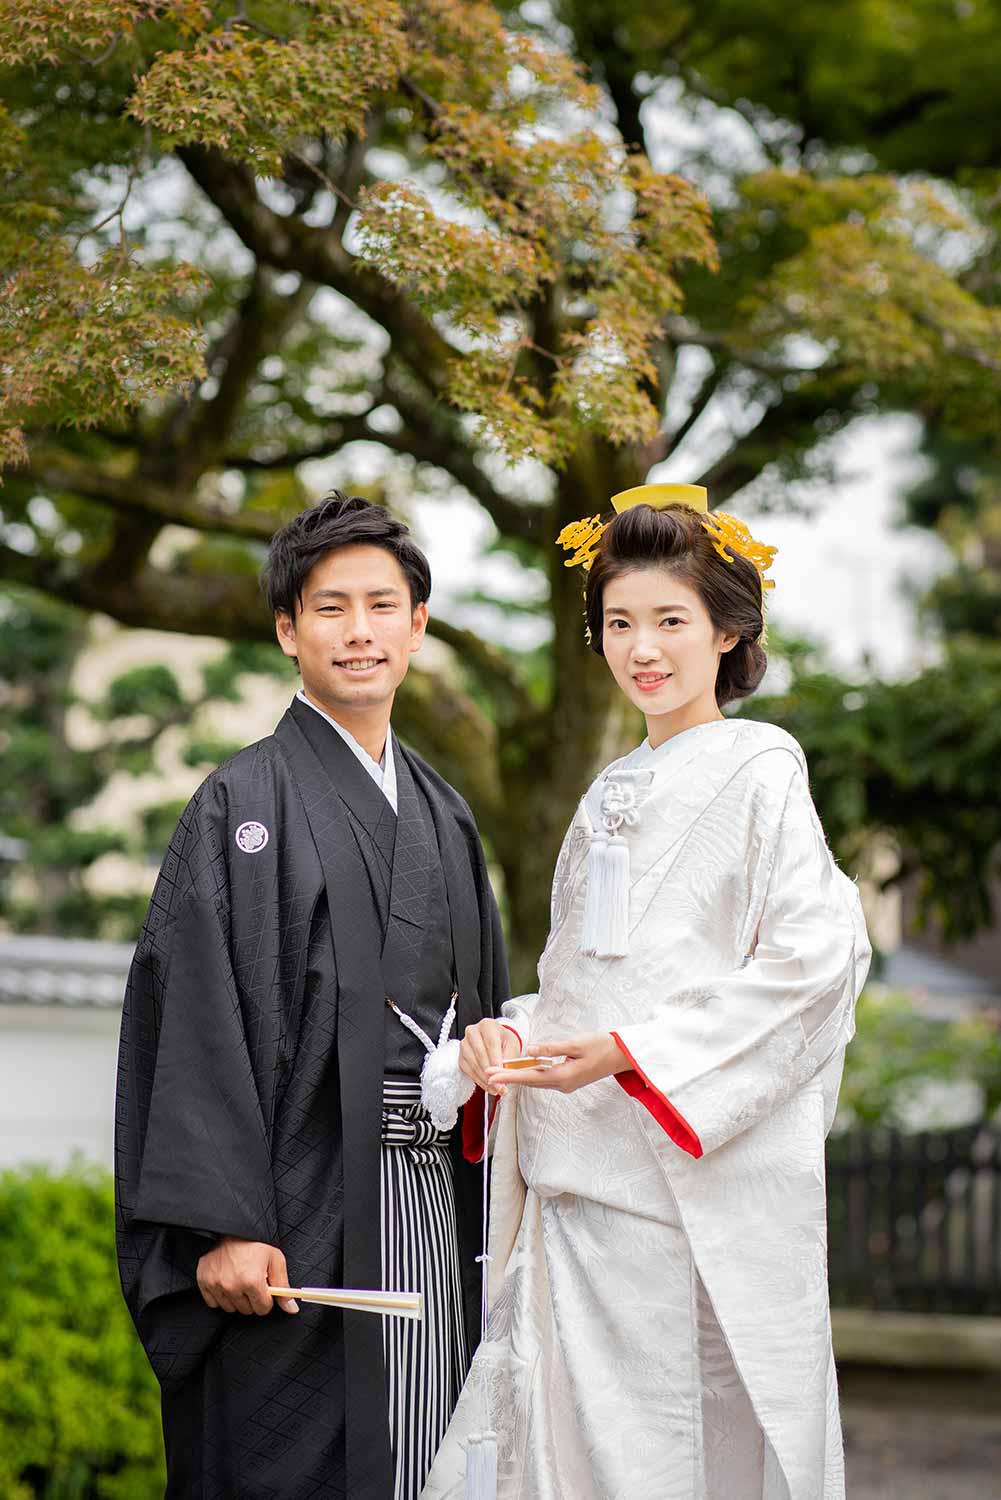 京都のお寺の境内での和装の新郎新婦様